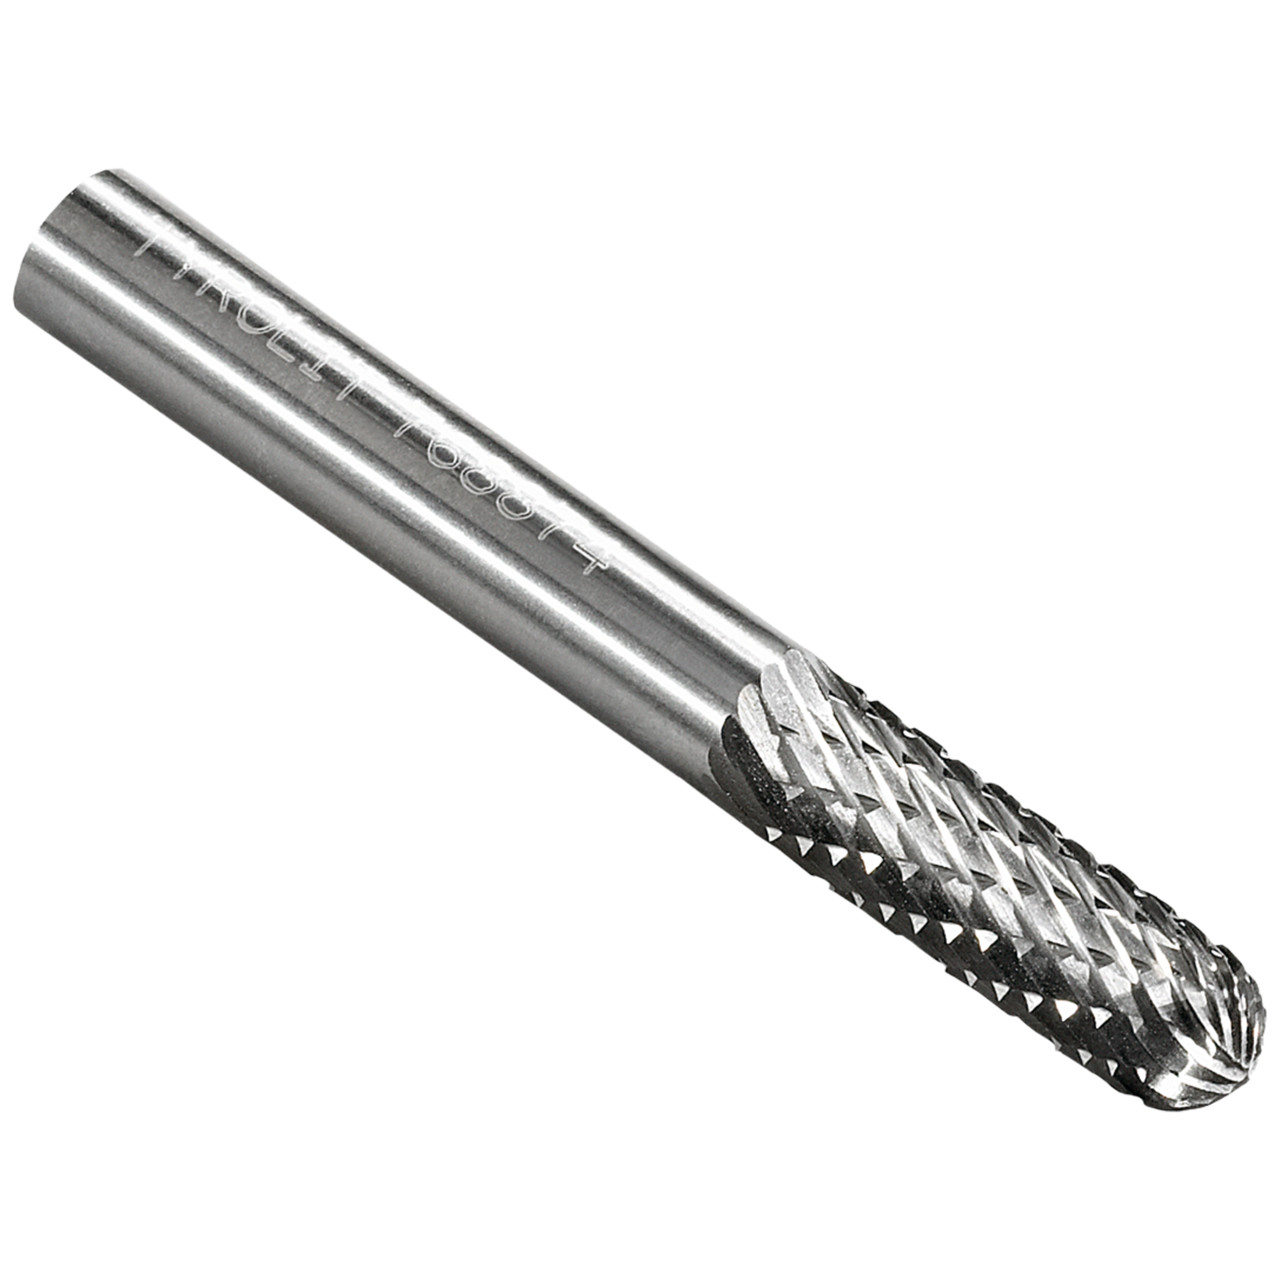 Tyrolit Fresa de metal duro DxT-SxL 8x19-6x65 Para fundición, acero y acero inoxidable, forma: 52WRC - cilíndrica, Art. 768878